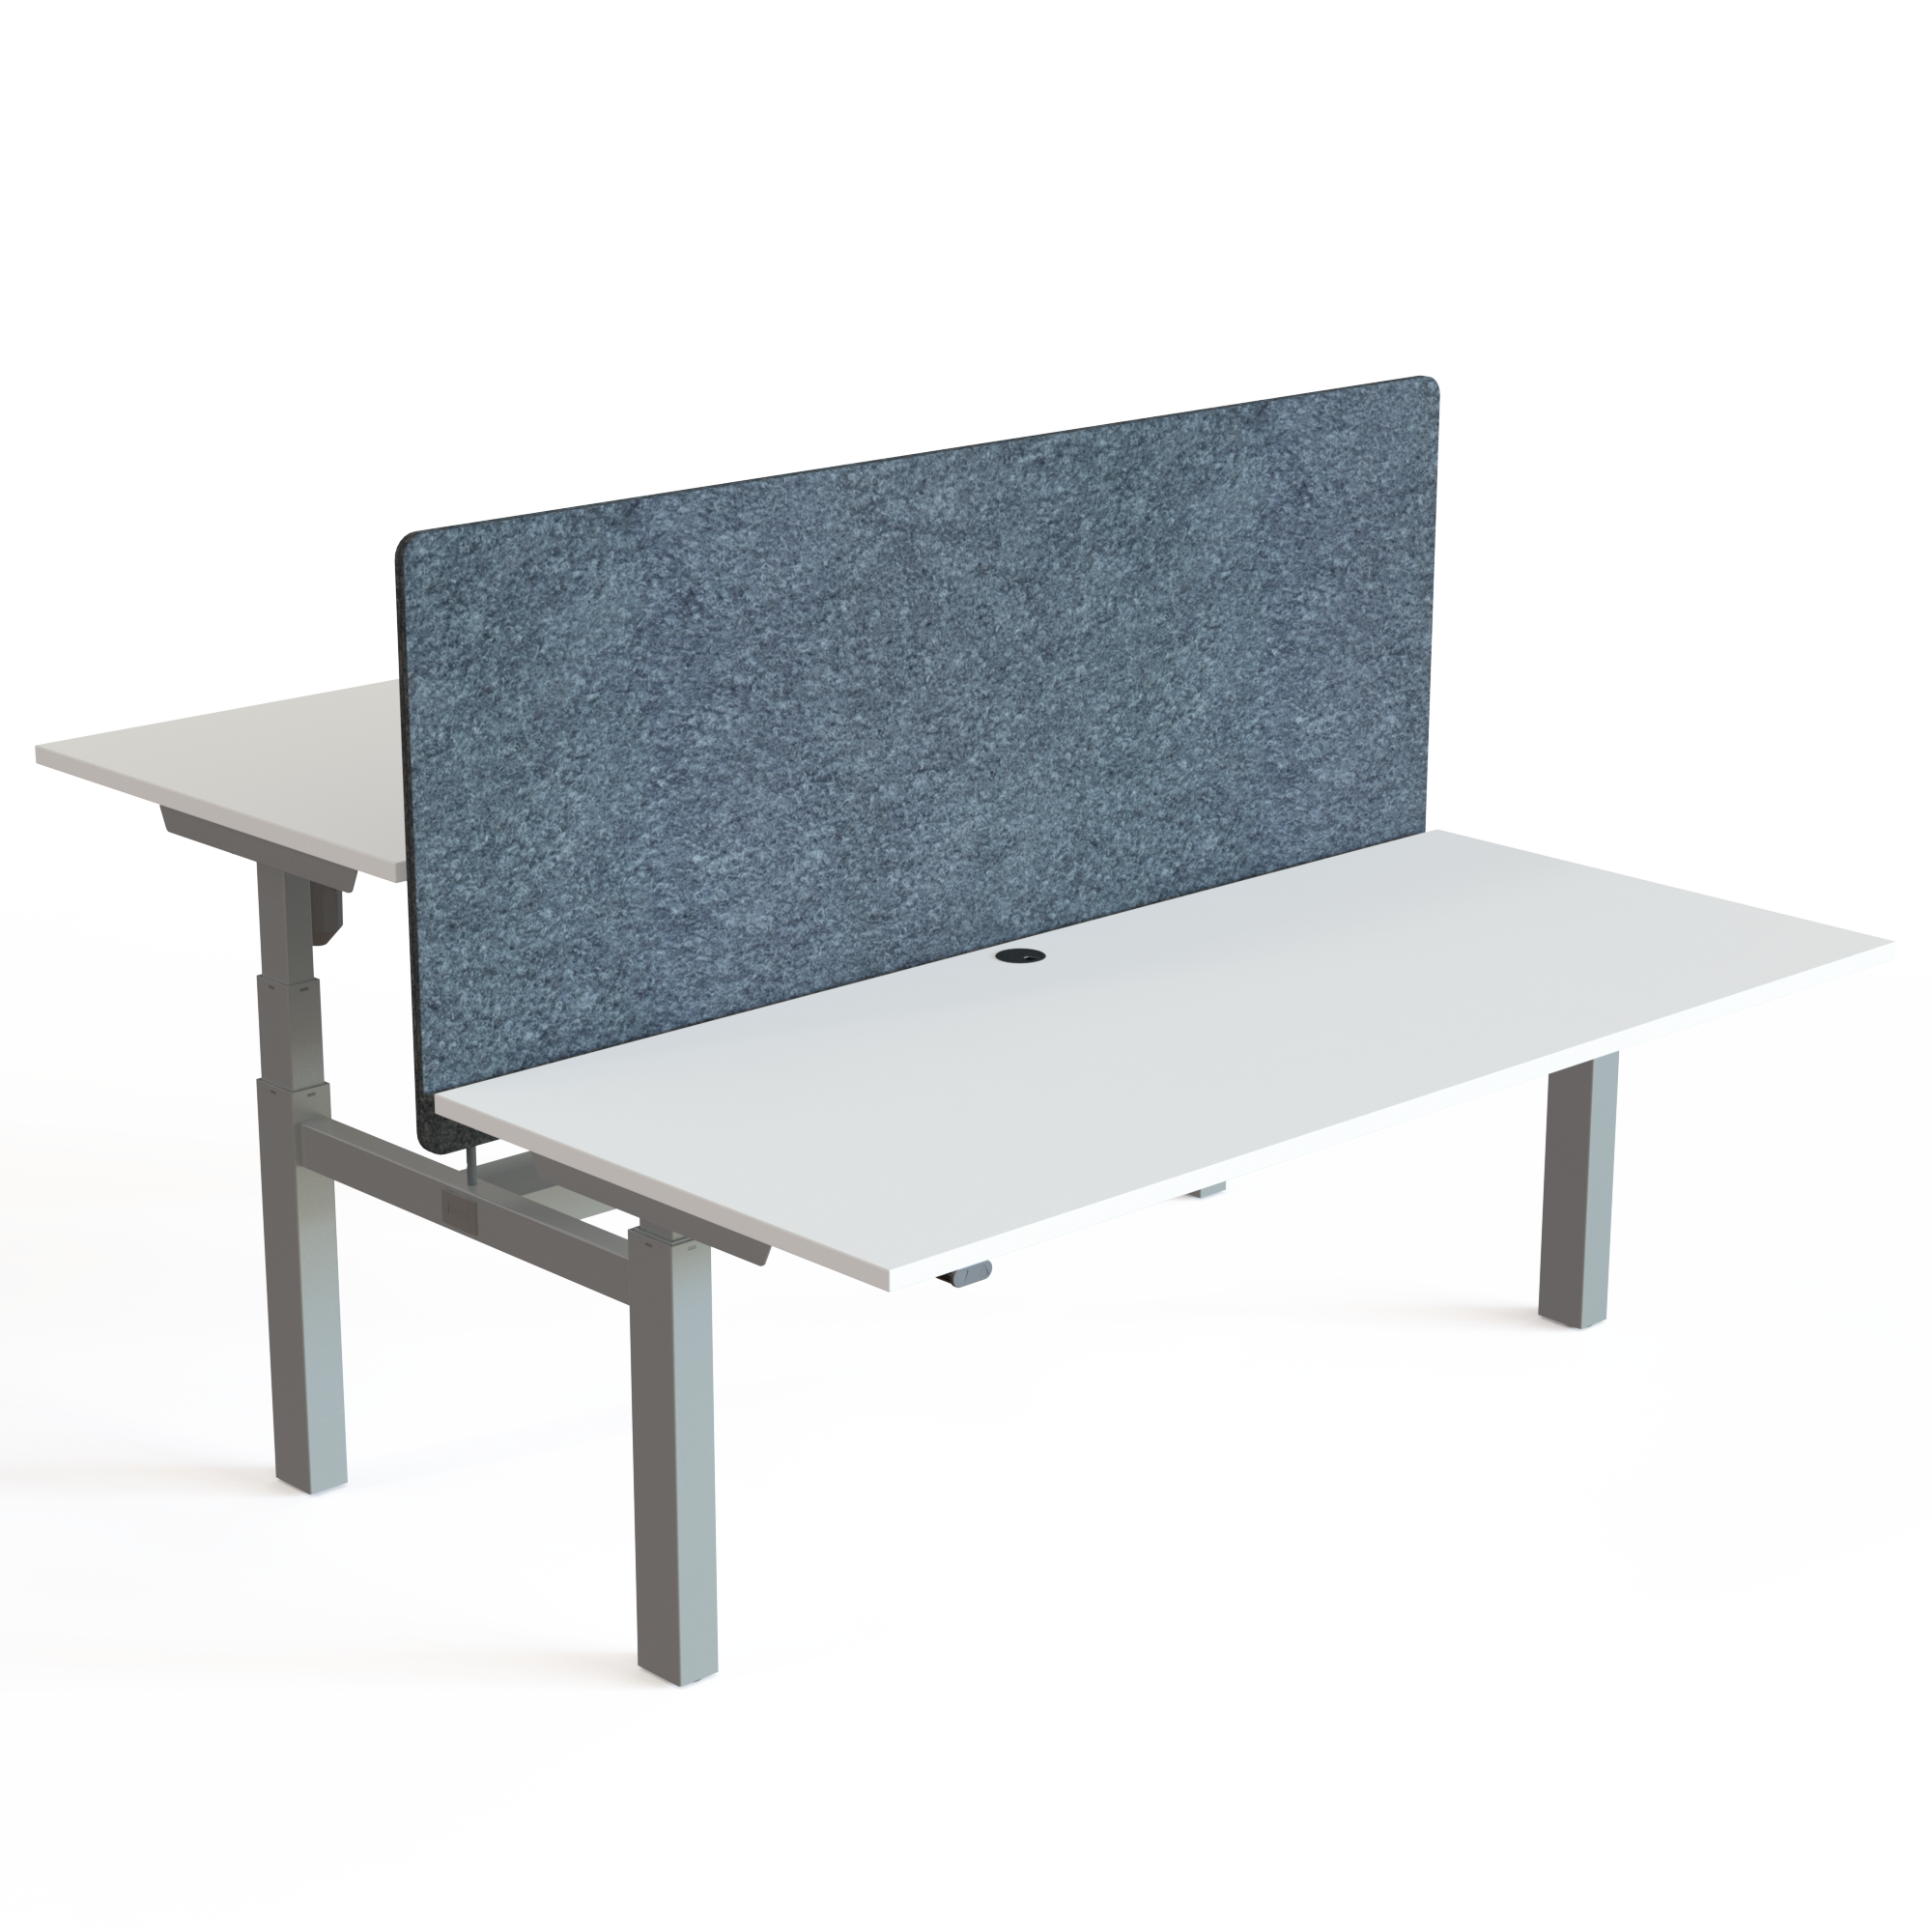 Schreibtisch steh/sitz | 180x80 cm | Weiß mit silbernem Gestell